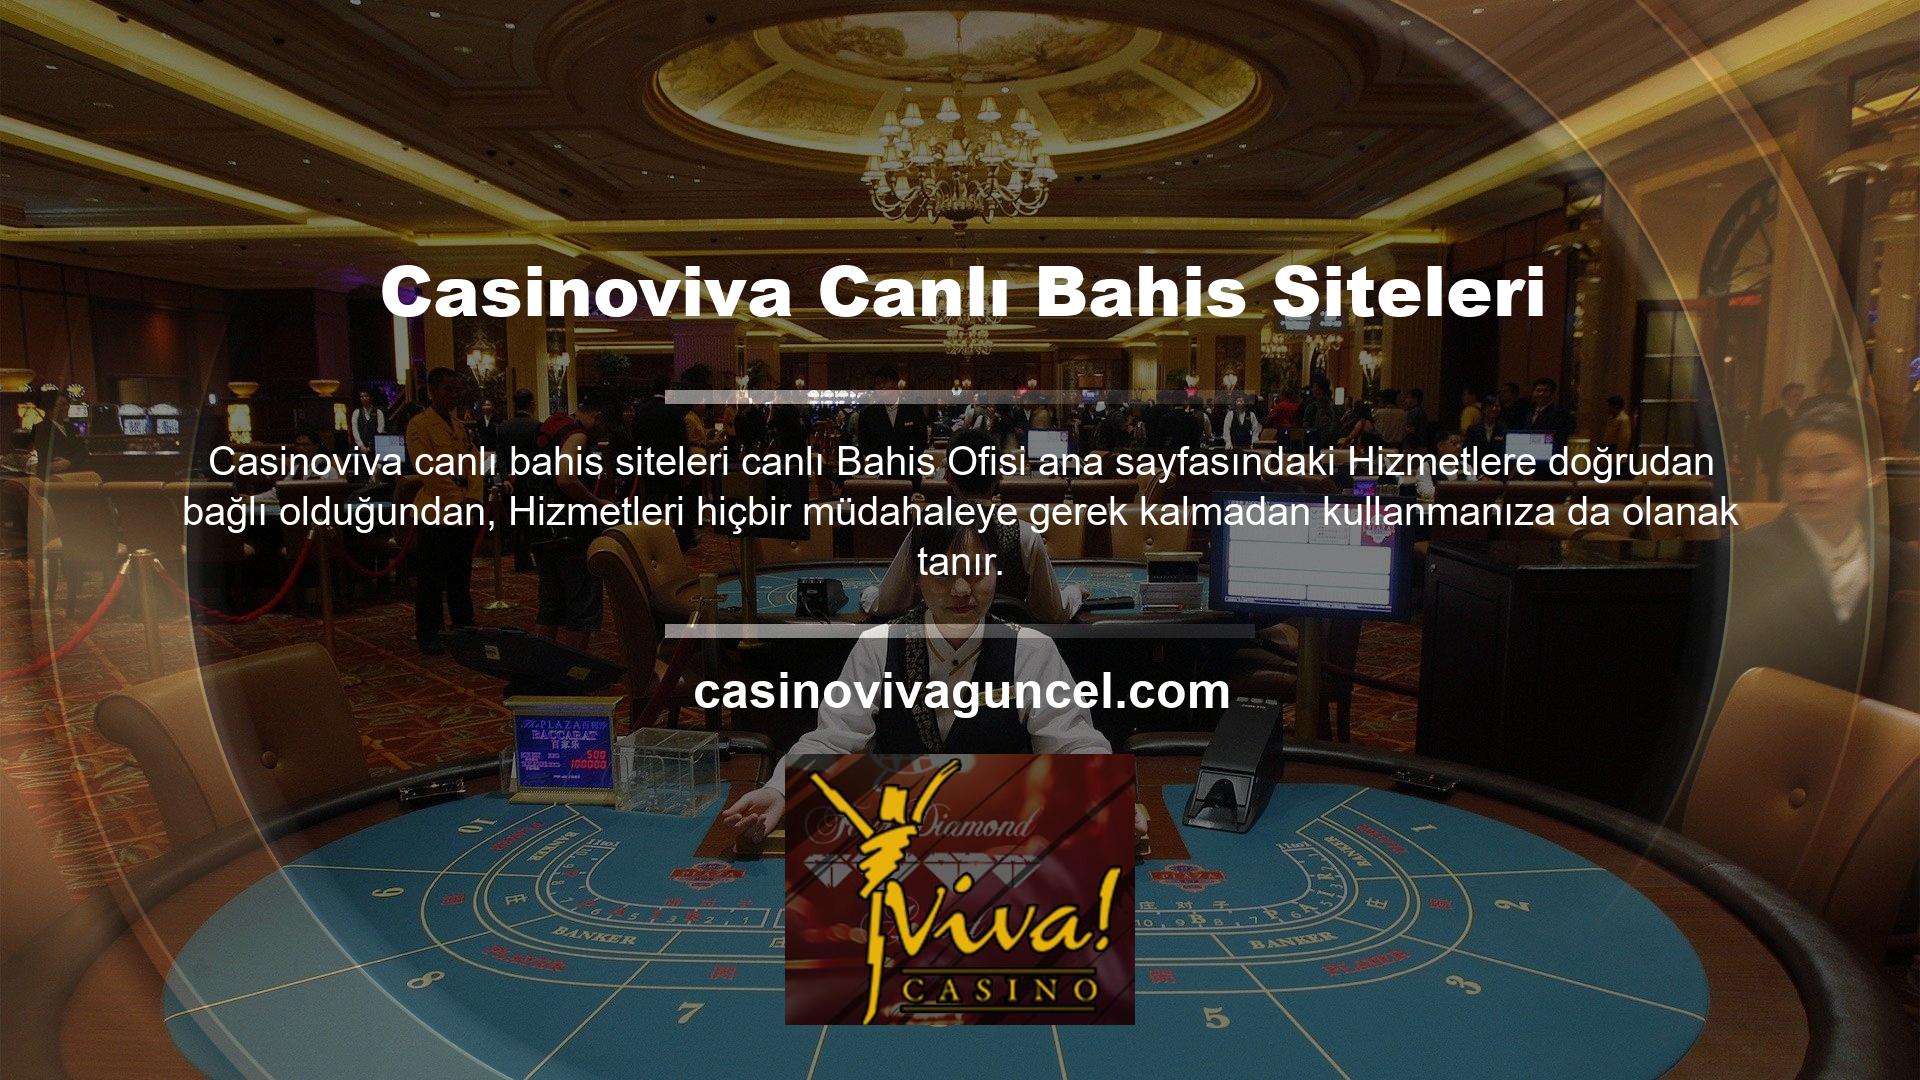 Casinoviva TV uygulamasını aktif hale getirerek canlı bahis sağlayıcısının sunduğu tüm bahis hizmetlerinden yararlanabilirsiniz